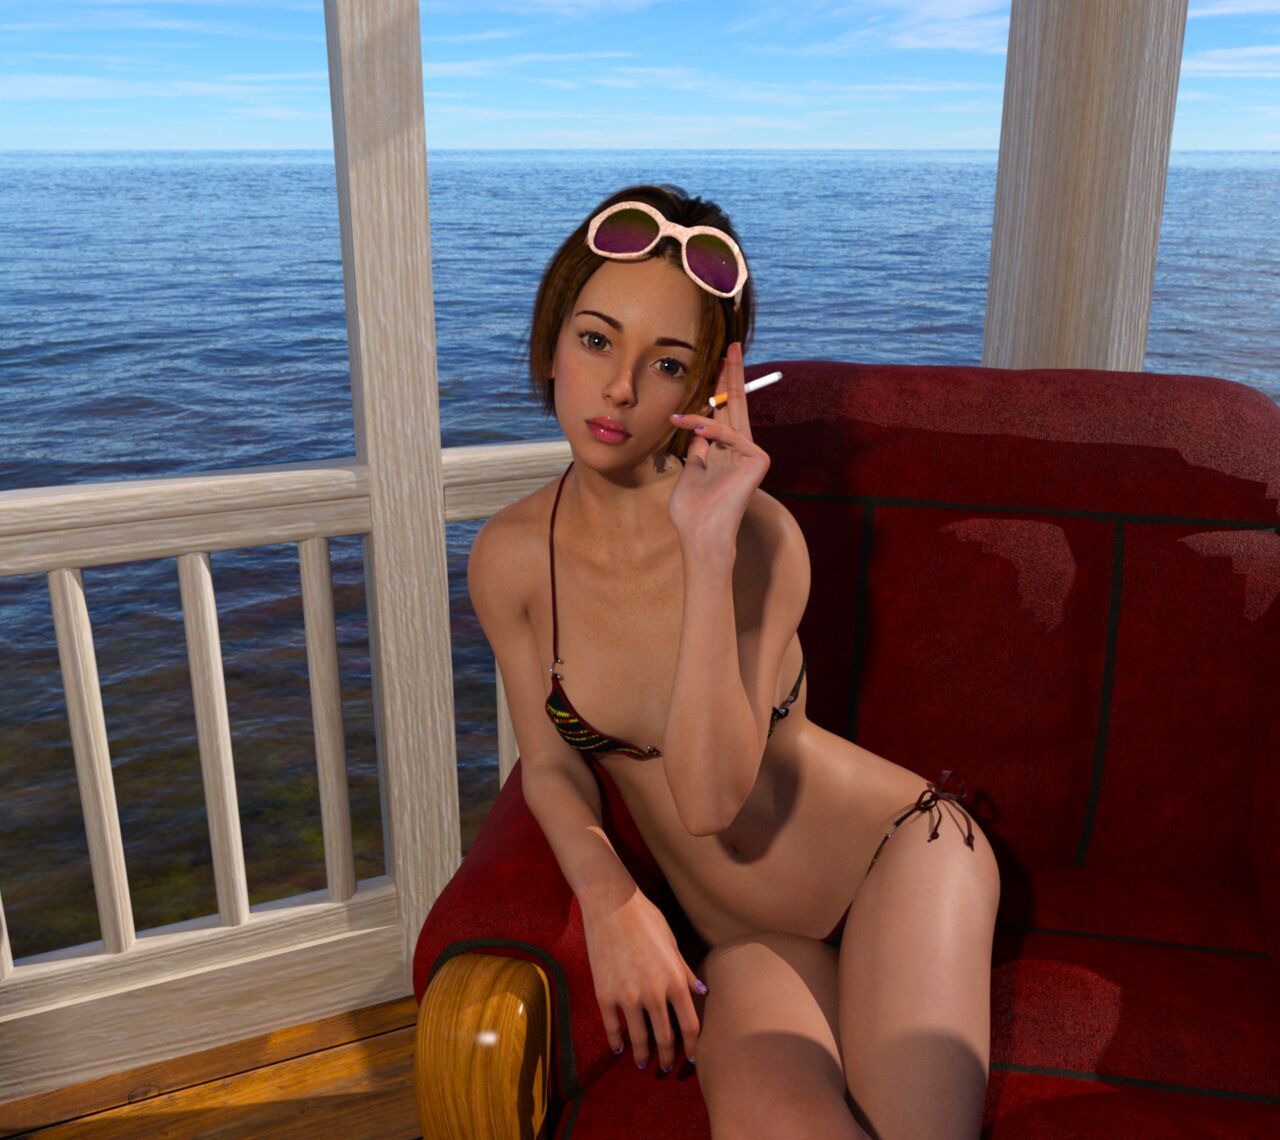 [DICK] Brunette Teen Girl at Seaside (93221230) 3